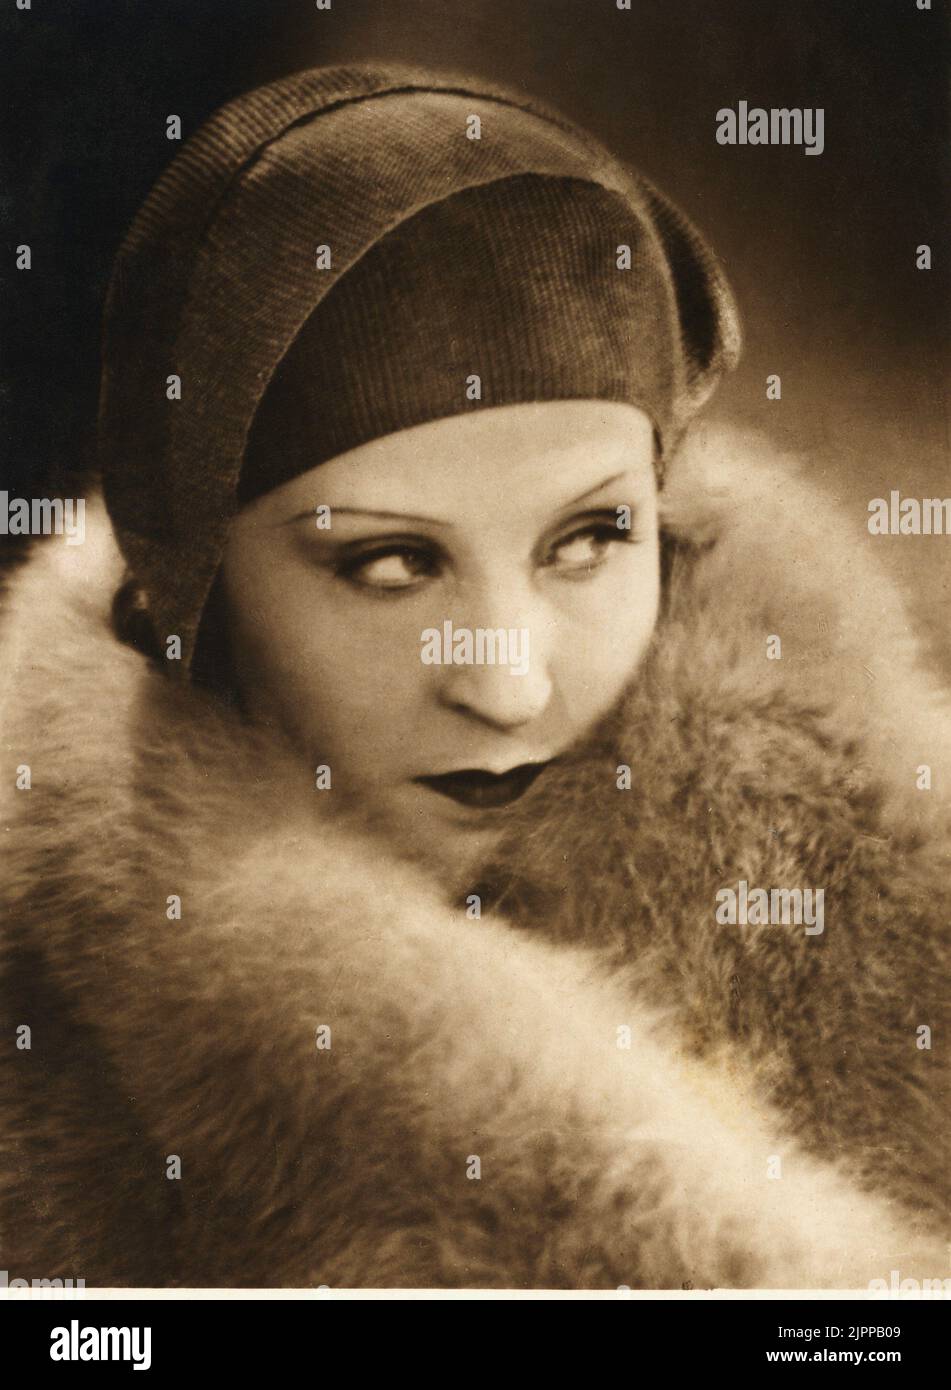 1920's, GERMANIA : l'attrice tedesca BRIGITTE HELM ( 1906 - 1996 ). - FILM MUTO - CINEMA MUTO - ART DECO - ritratto - ritratto - cappello - cappello - pelliccia di volpe - pelliccia di volpe - VAMP - ANNI venti - 20's - 20's - '20 ---- Archivio GBB Foto Stock